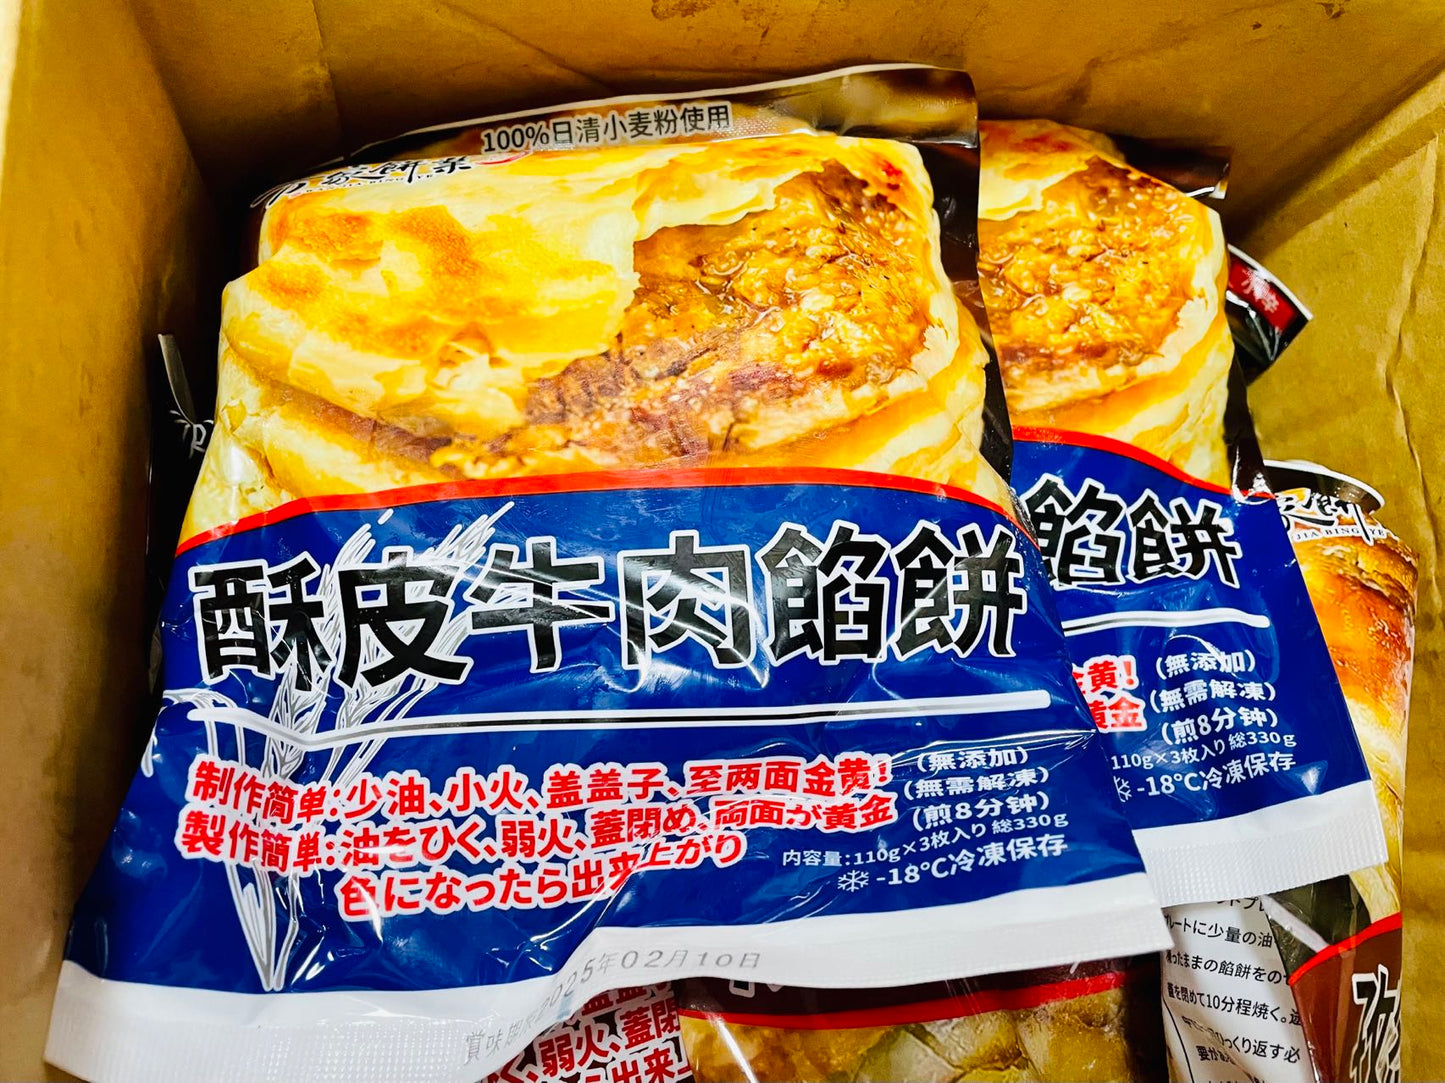 万家餅業 酥皮牛肉餡餅3枚 日本国内加工  100%日清面粉使用  原价734円 約330g